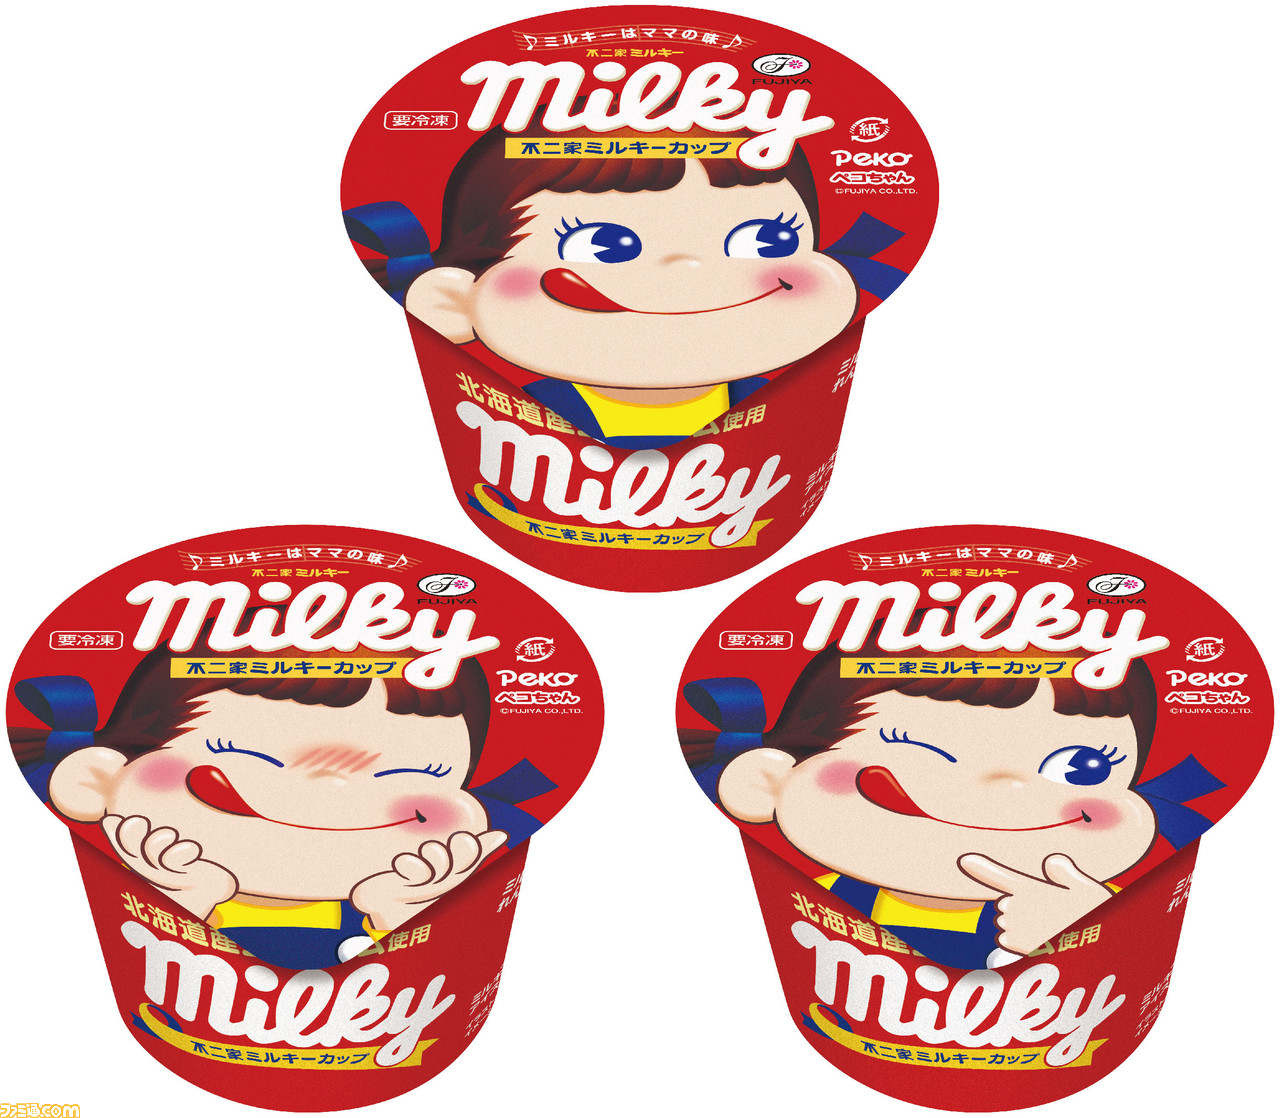 ミルキーのアイス“不二家ミルキーカップ”本日9/21発売。トロっとしたミルキー風練乳入りのカップアイスがリニューアル | ゲーム・エンタメ最新